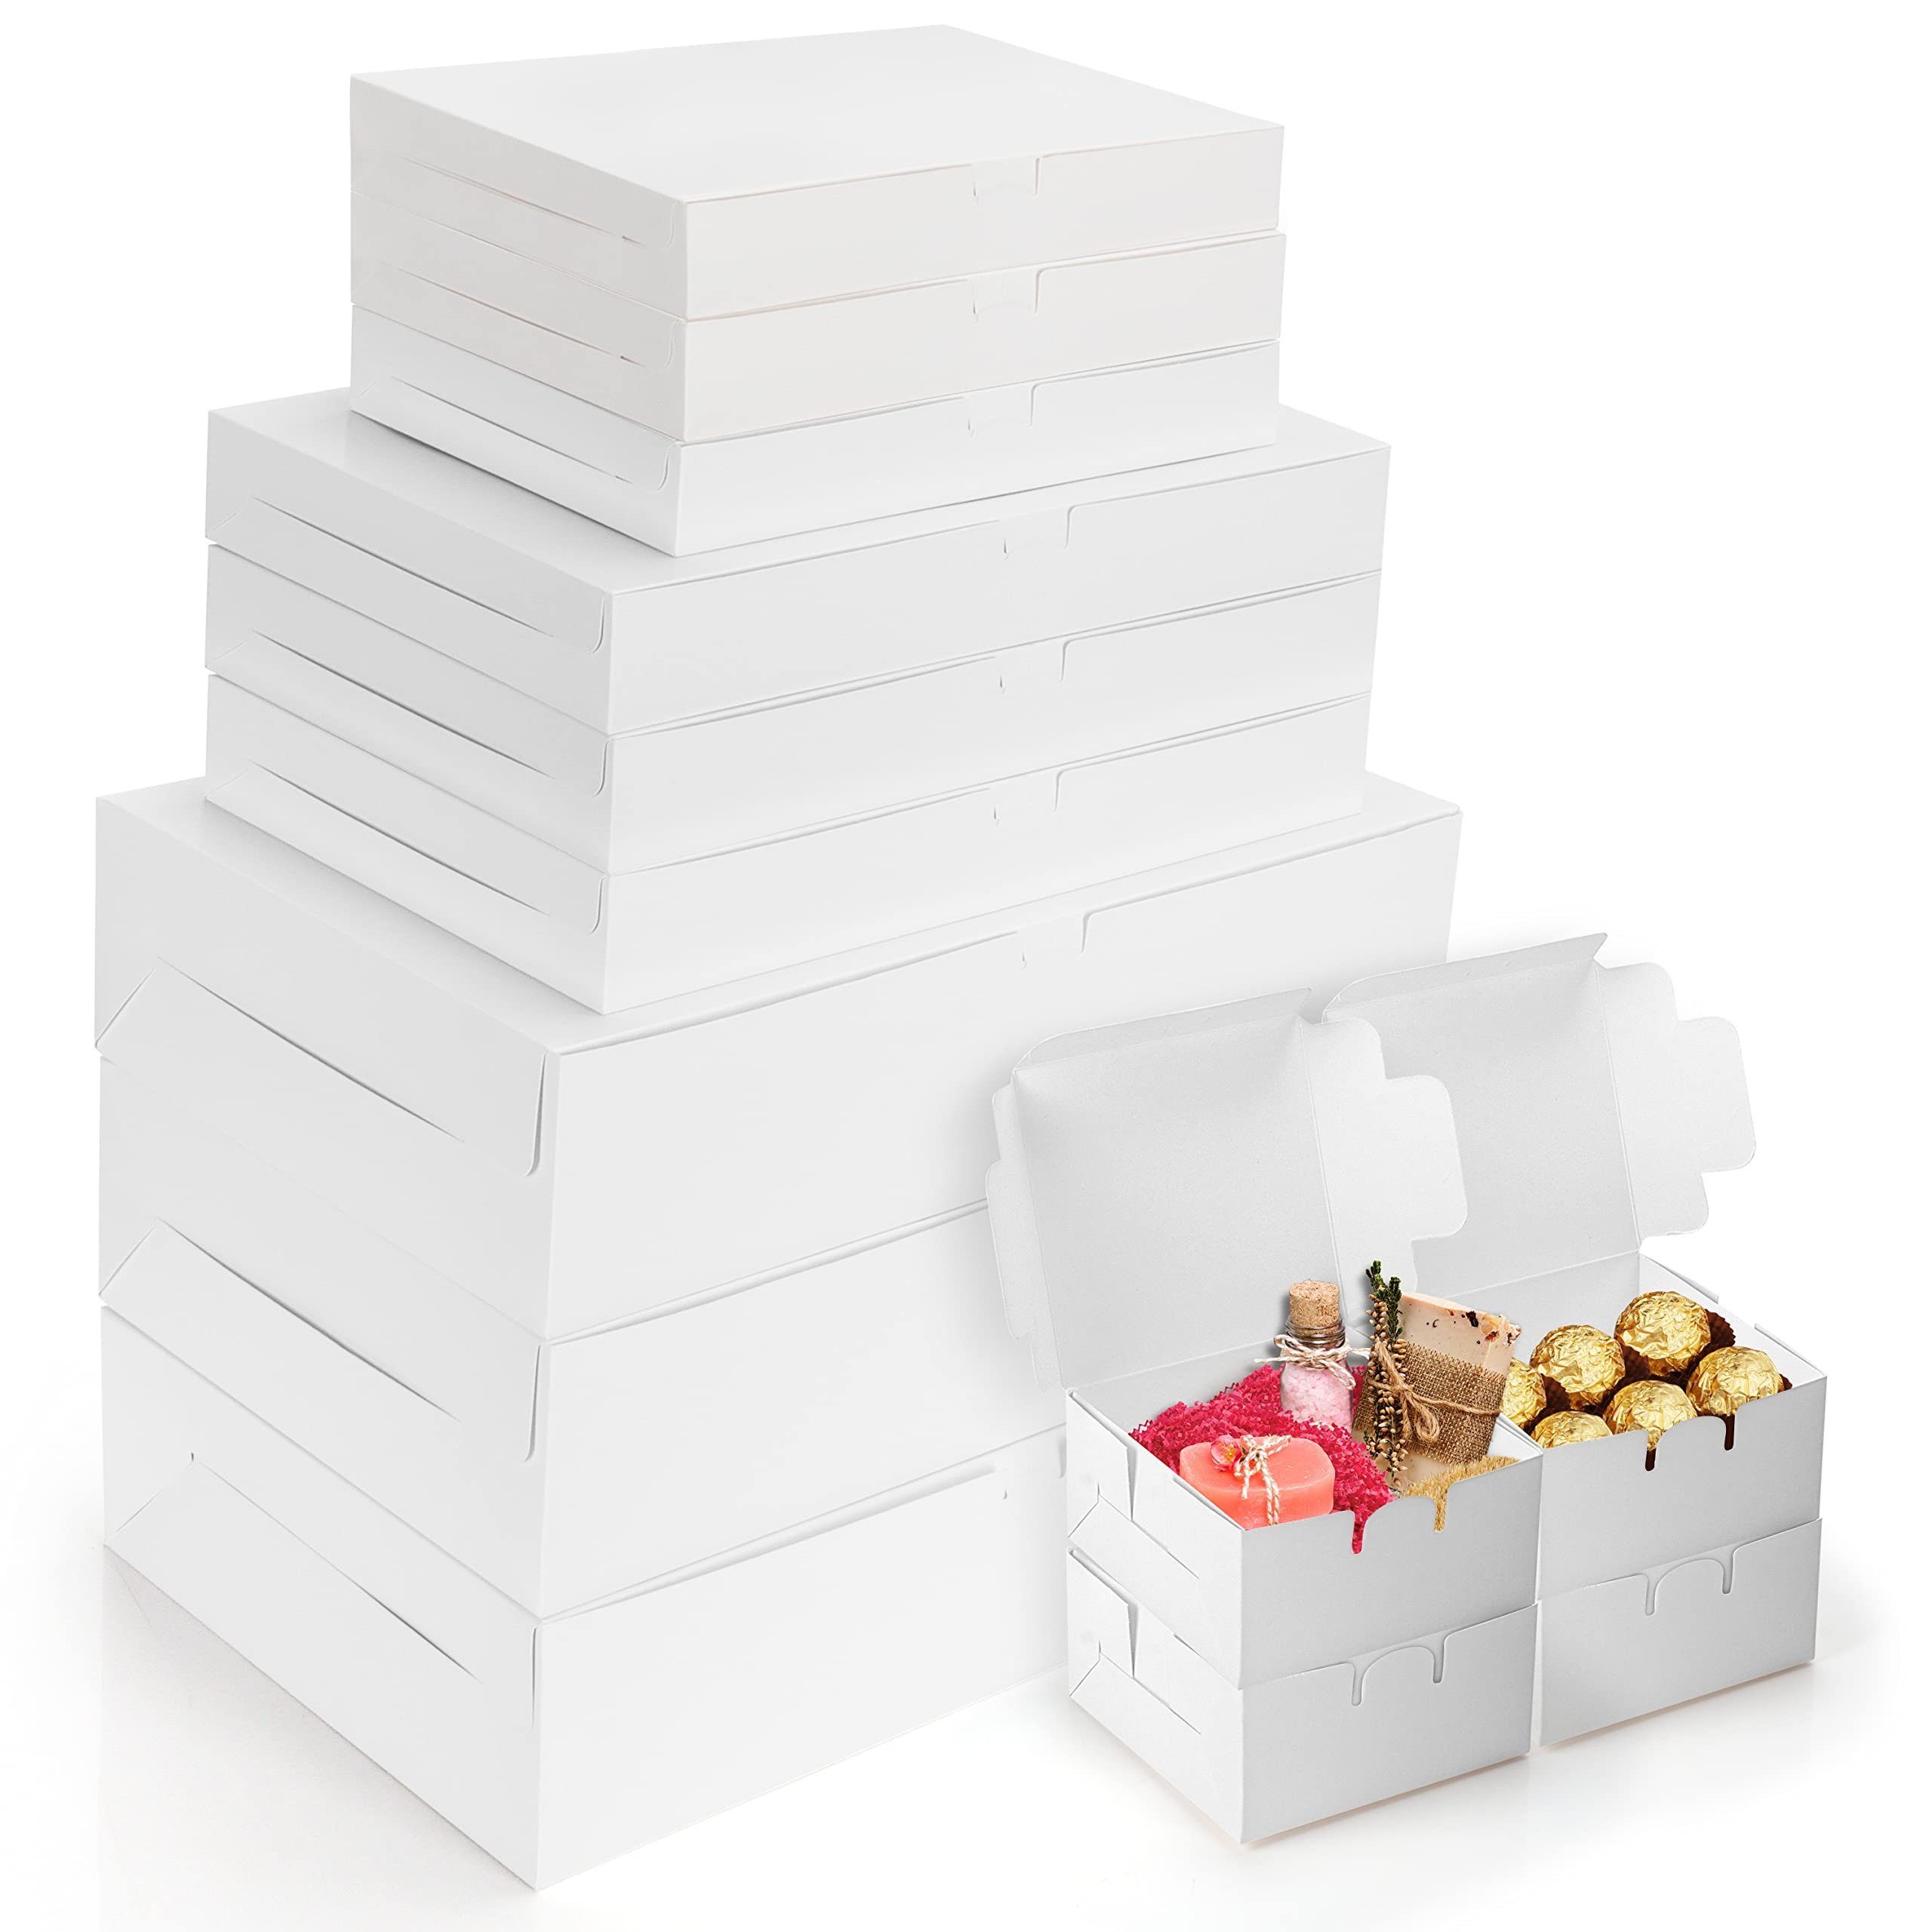 Belle Vous Geschenkbox 13 Karton Geschenkboxen Set - 4 Verschiedene Größen, 13 Stück Karton Geschenkboxen Set - 4 Größen - Einfach aufzubauen